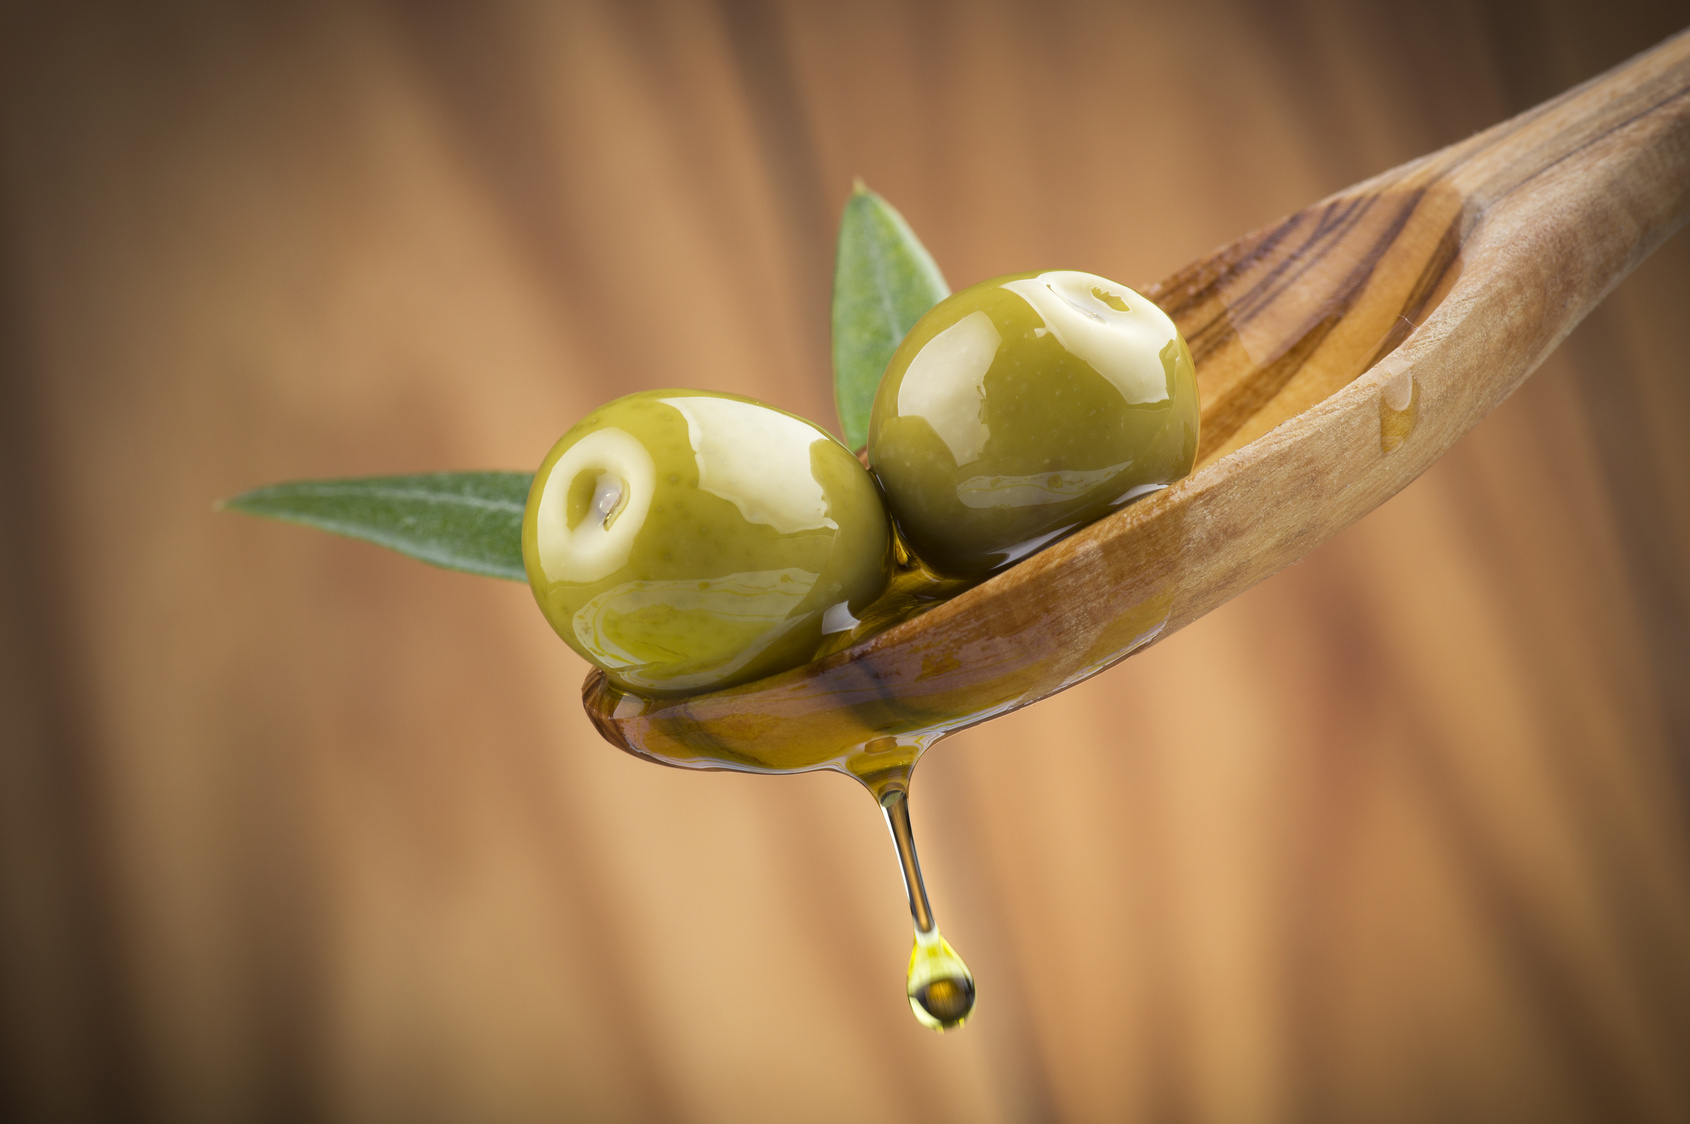 La « Perle » des huiles d’olive, un chémotype exceptionnel pour un trésor santé.